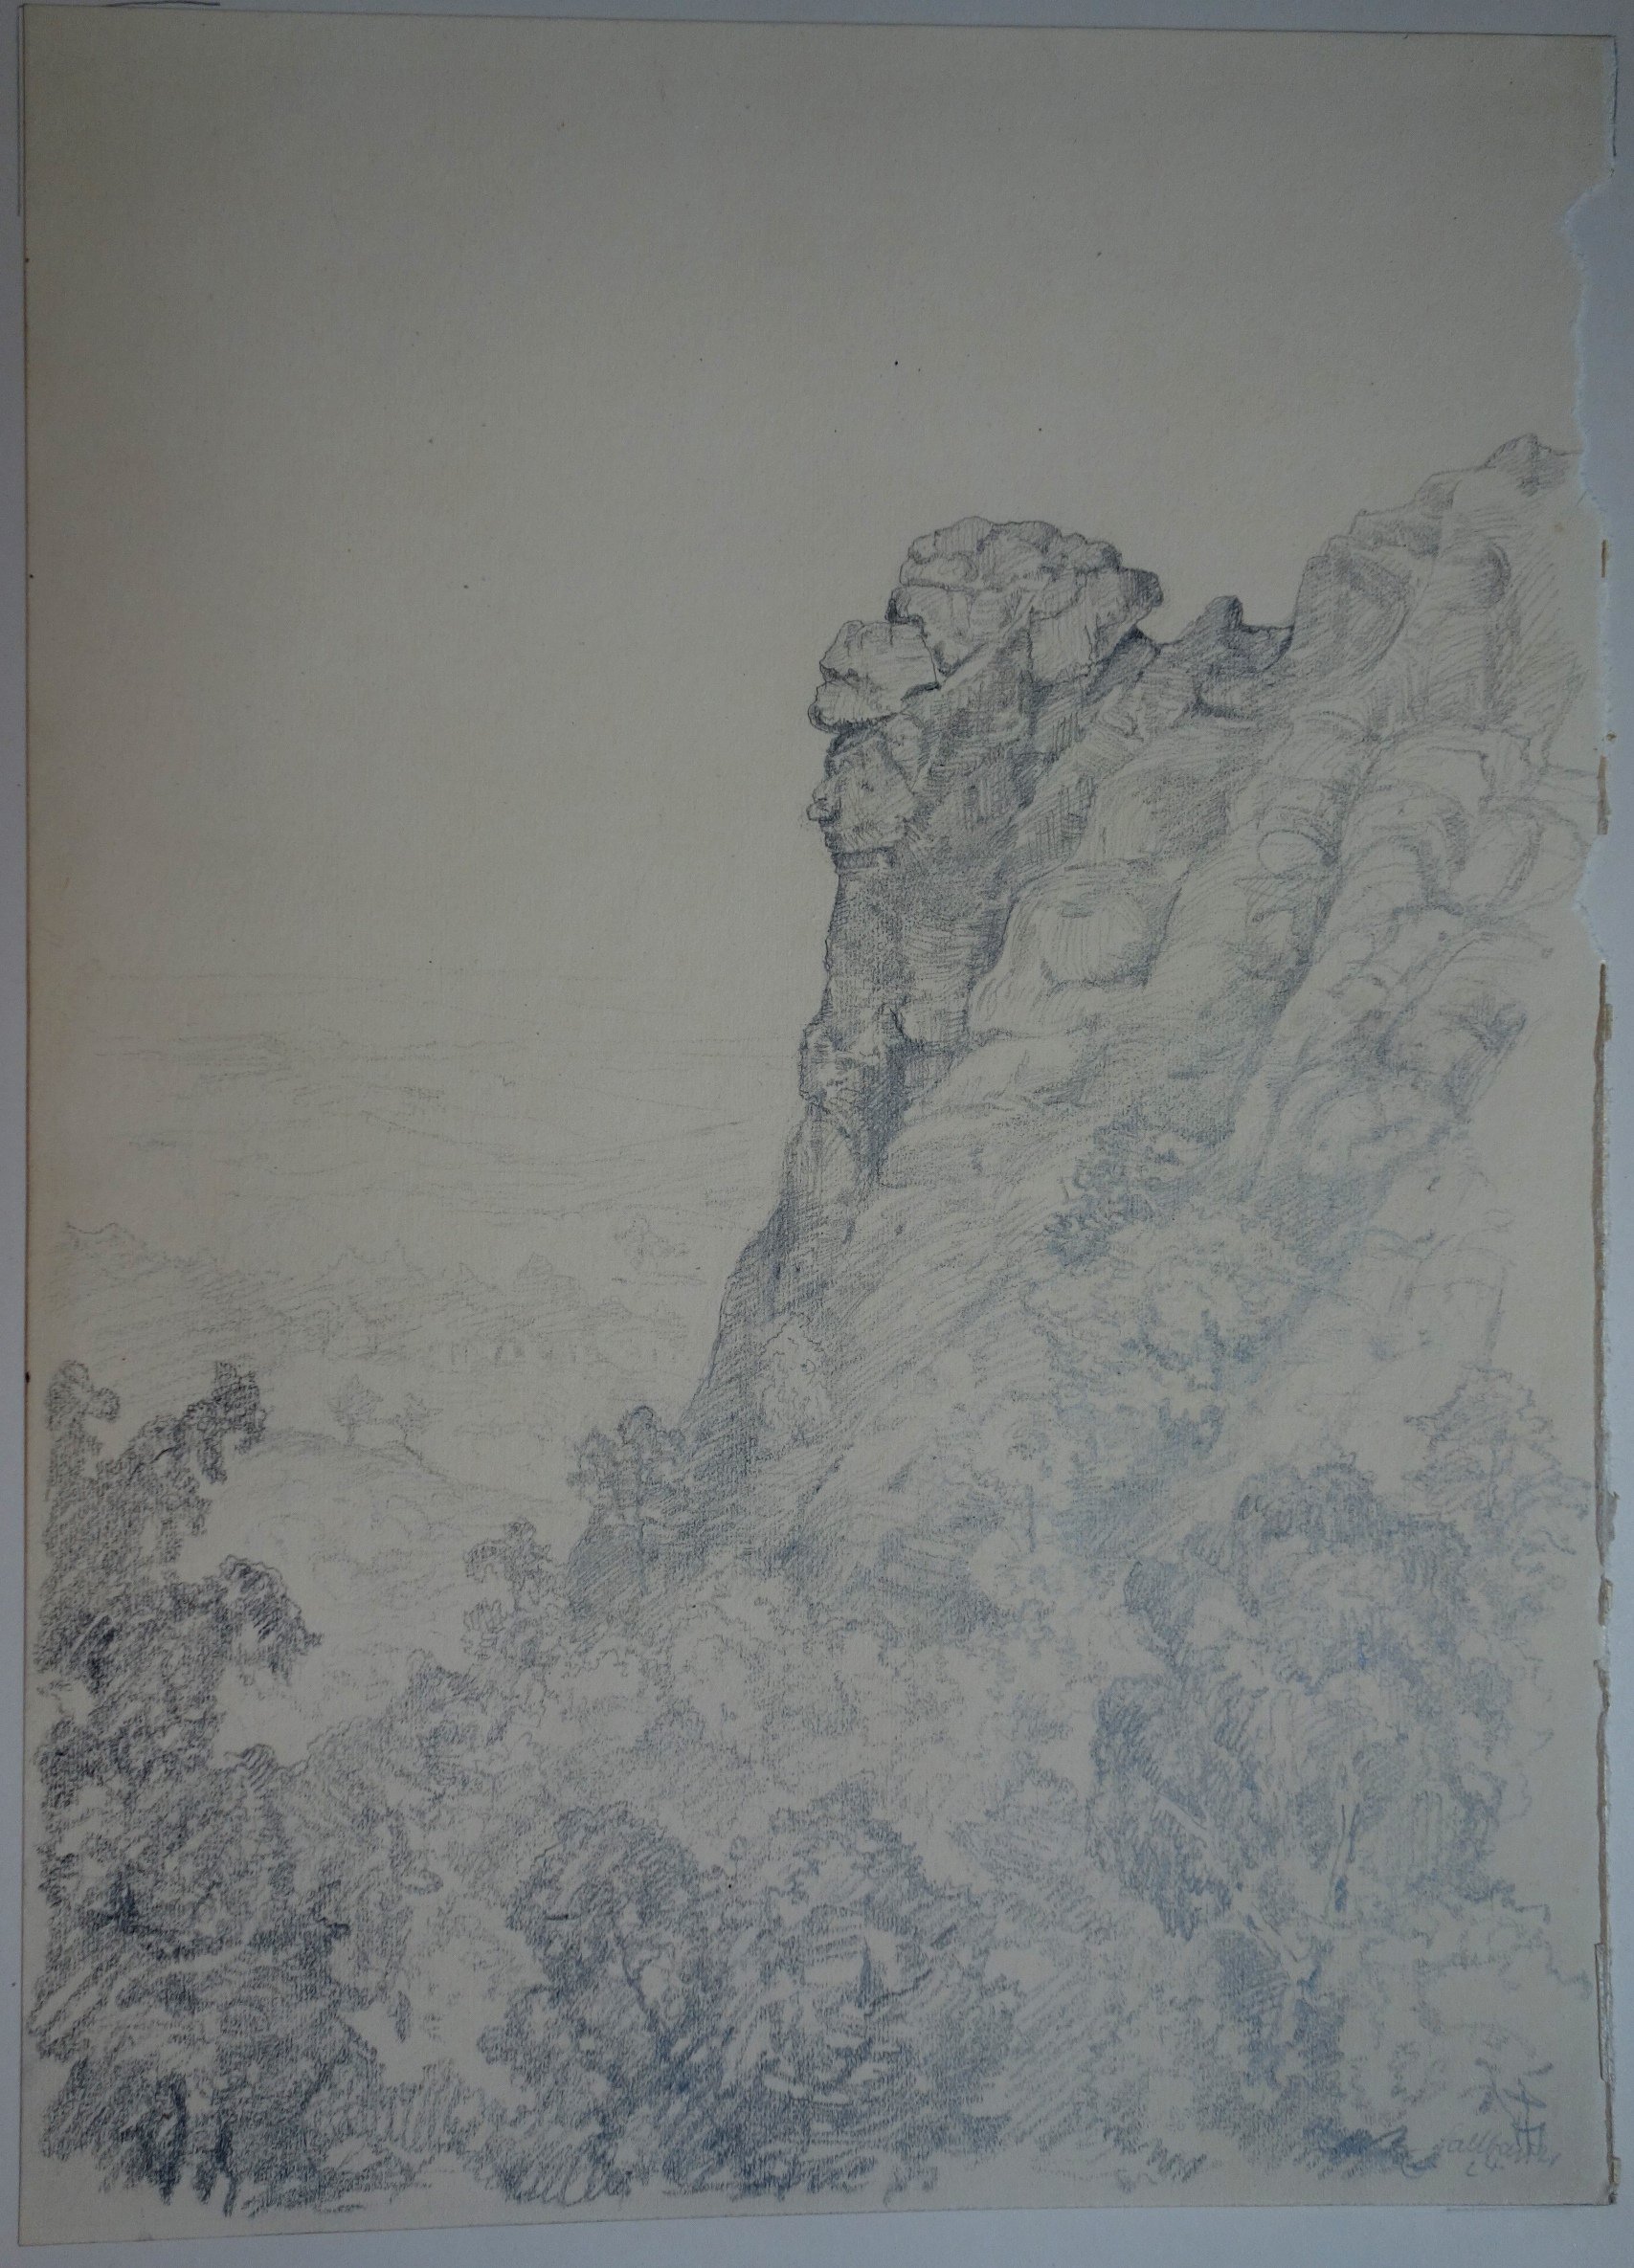 Felsen am Regenstein, von Christian Hallbauer, Oktober 1924 (Schloß Wernigerode GmbH RR-F)